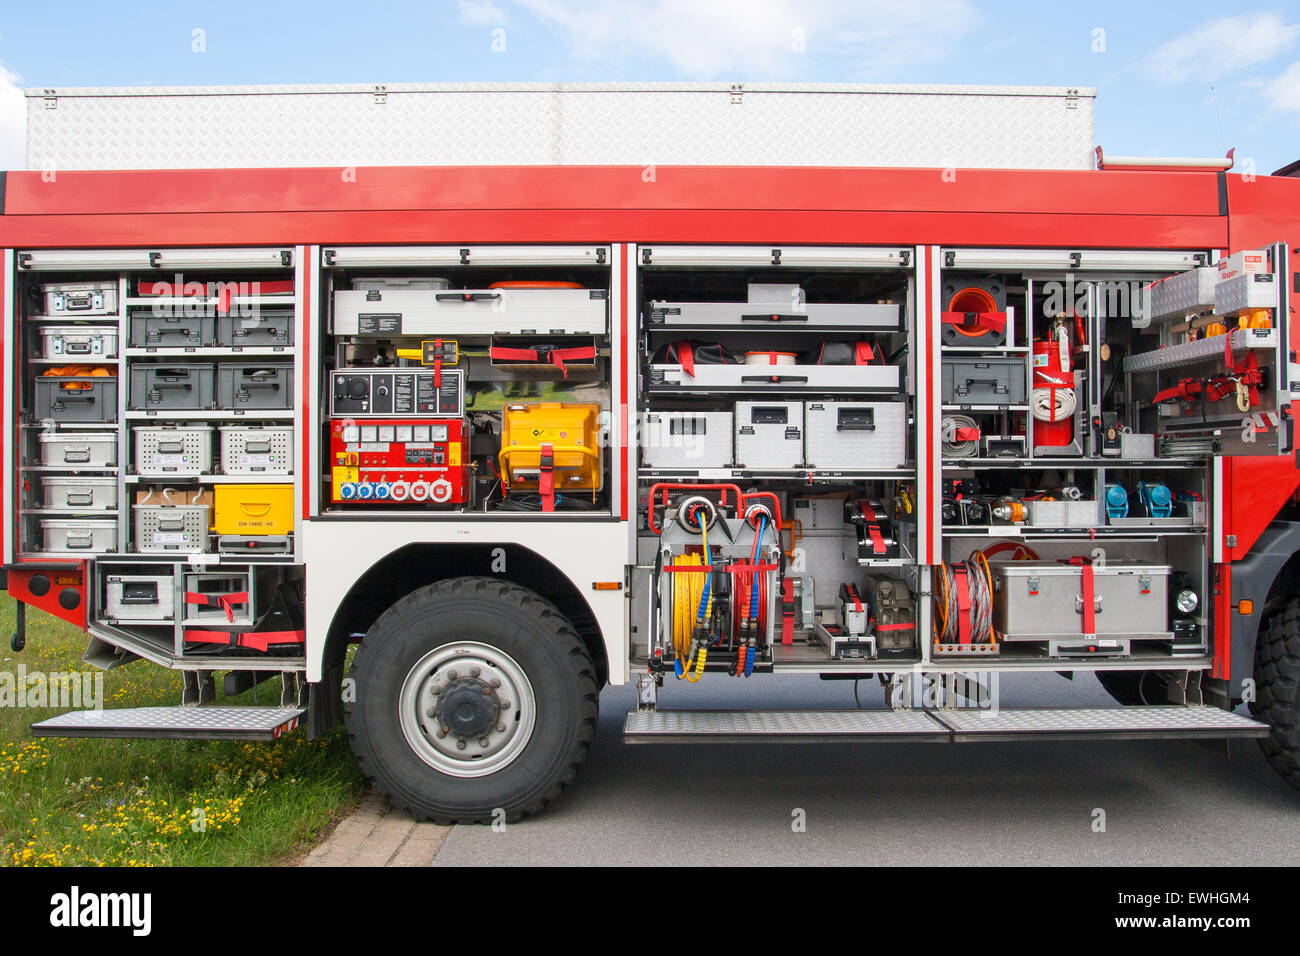 Firetruck equipment Stock Photo